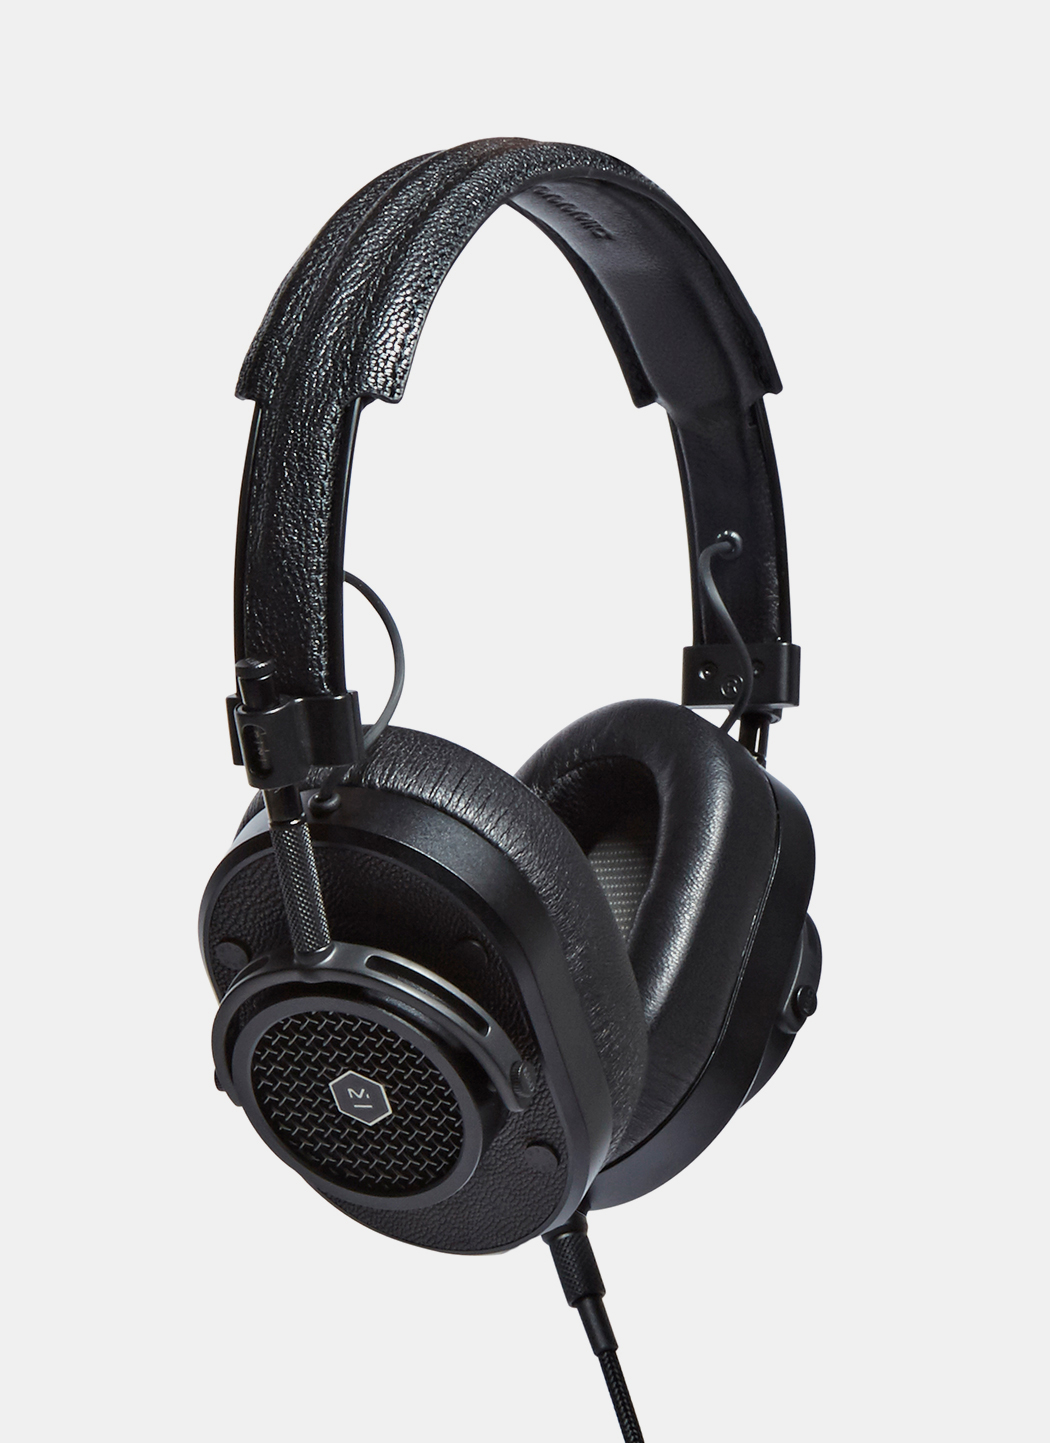 MH40 Over Ear Headphones